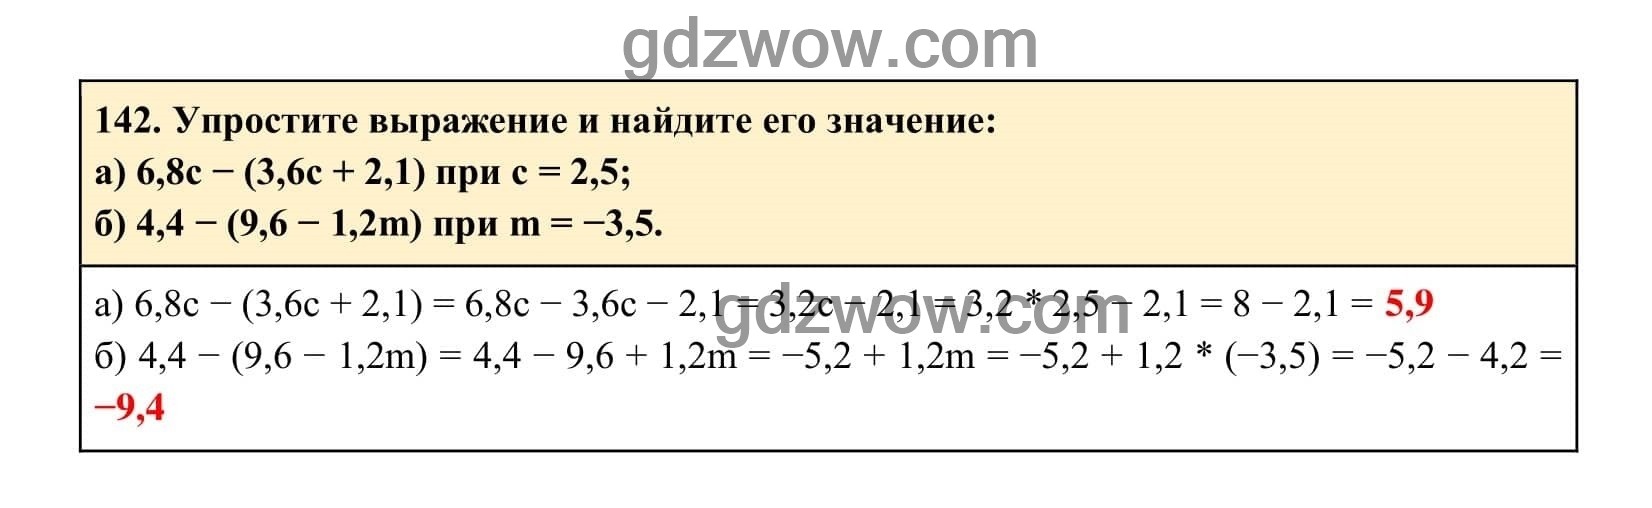 Упражнение 142 - ГДЗ по Алгебре 7 класс Учебник Макарычев (решебник) - GDZwow